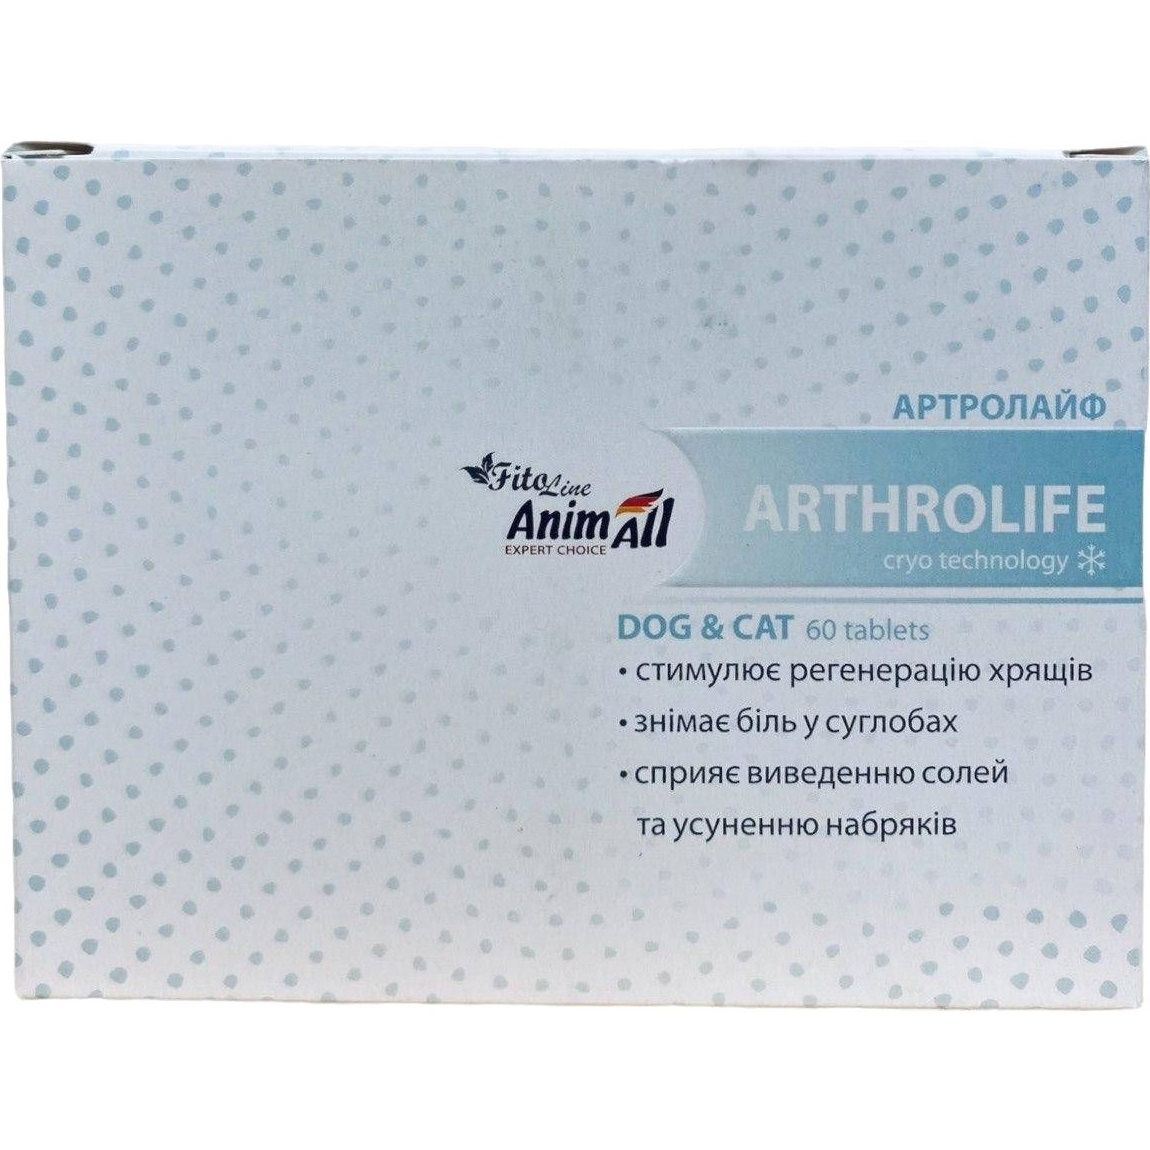 Вітаміни AnimAll FitoLine Arthrolife для котів та собак 60 таблеток - фото 2